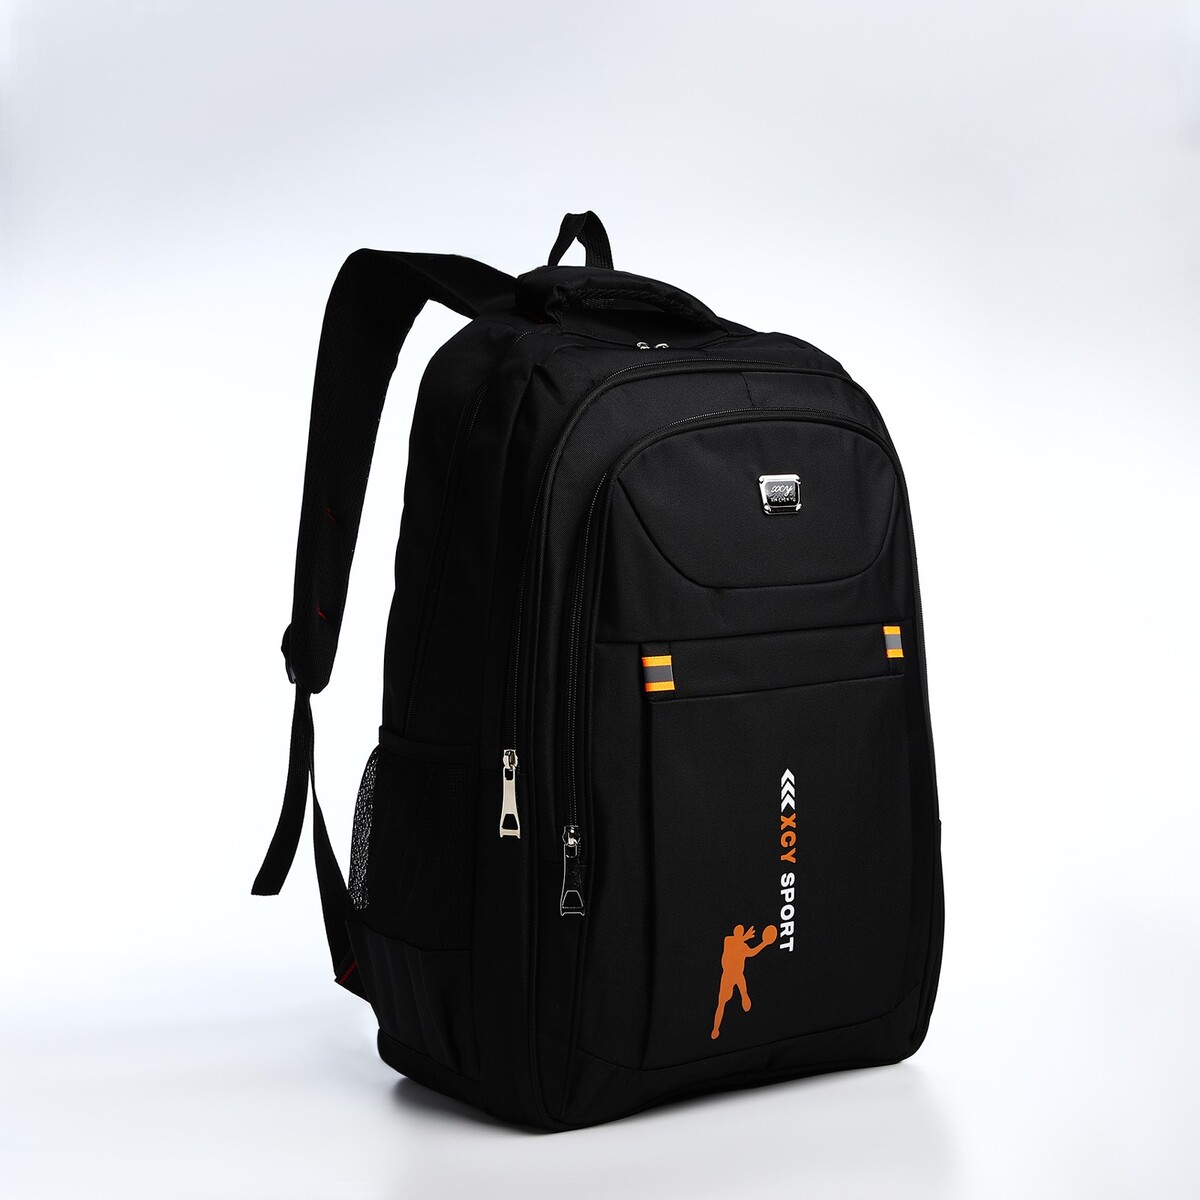 Рюкзак молодежный из текстиля, 2 отдела на молнии, 3 кармана, цвет черный/оранжевый рюкзак молодежный из текстиля 2 отдела на молнии 3 кармана оранжевый